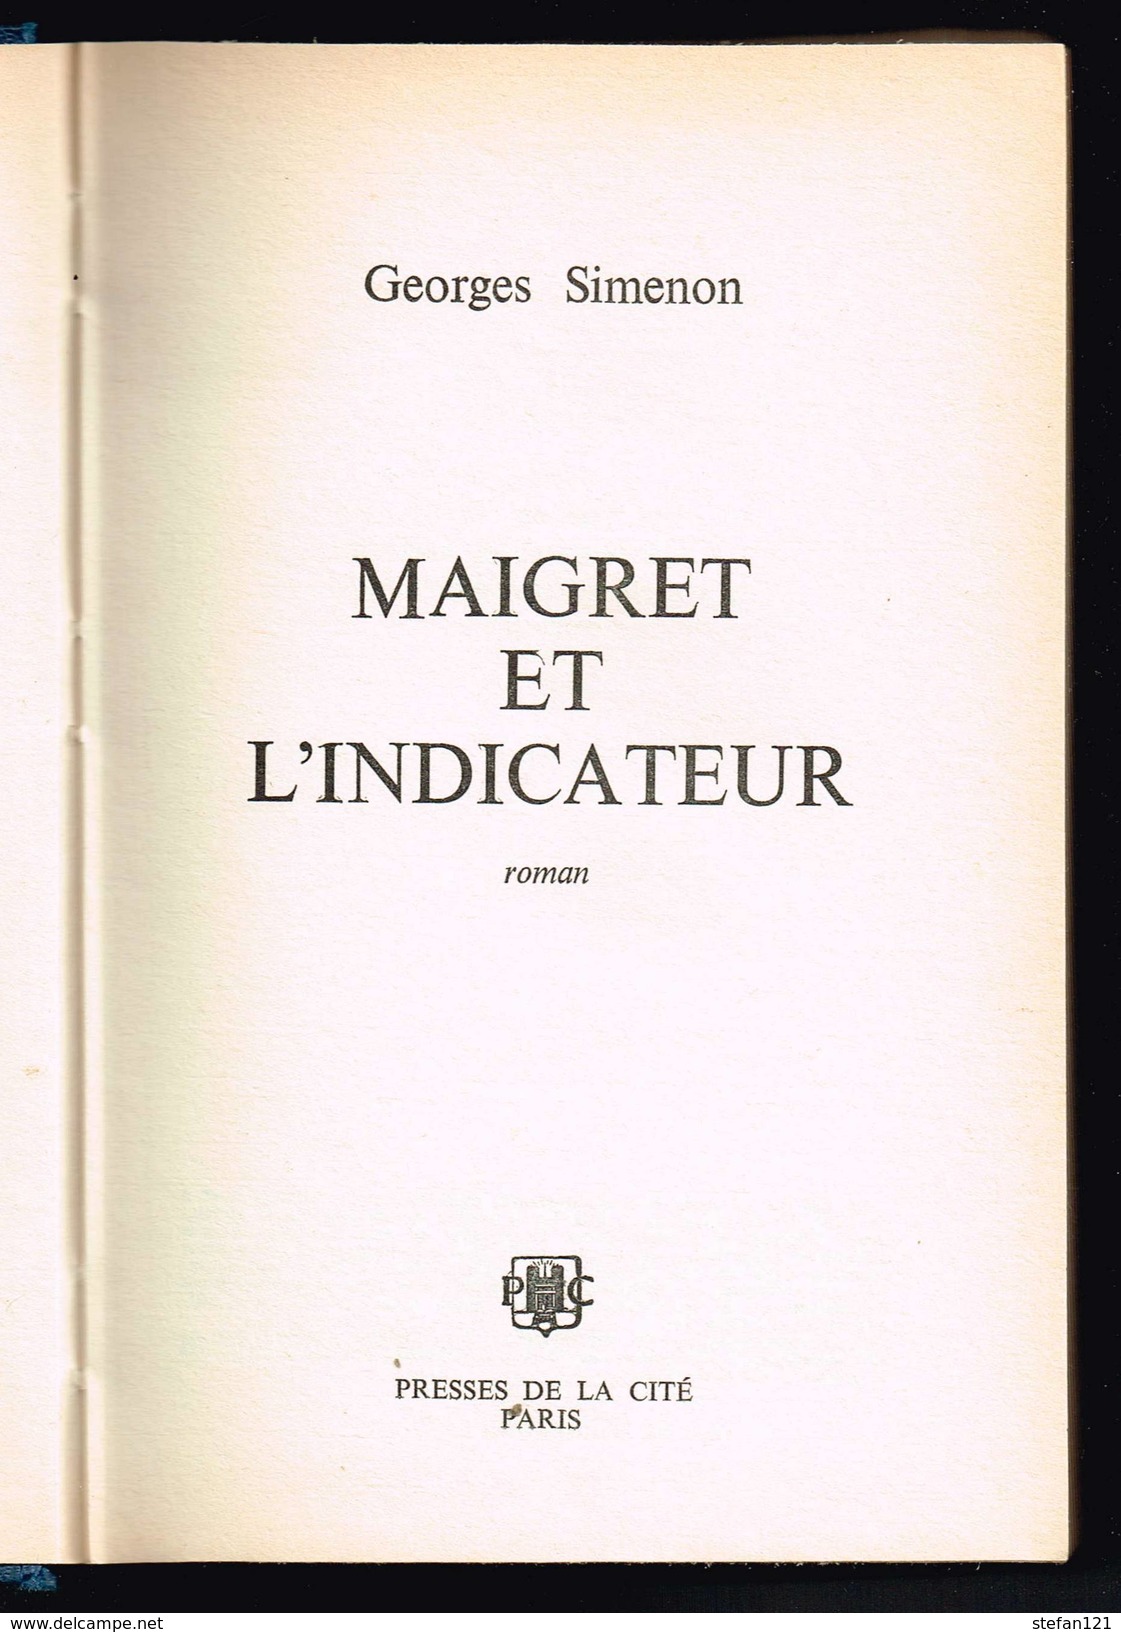 Maigret Et L'indicateur - Georges Simenon - 1971 - 254 Pages 20,8 X 13,5 Cm - Presses De La Cité